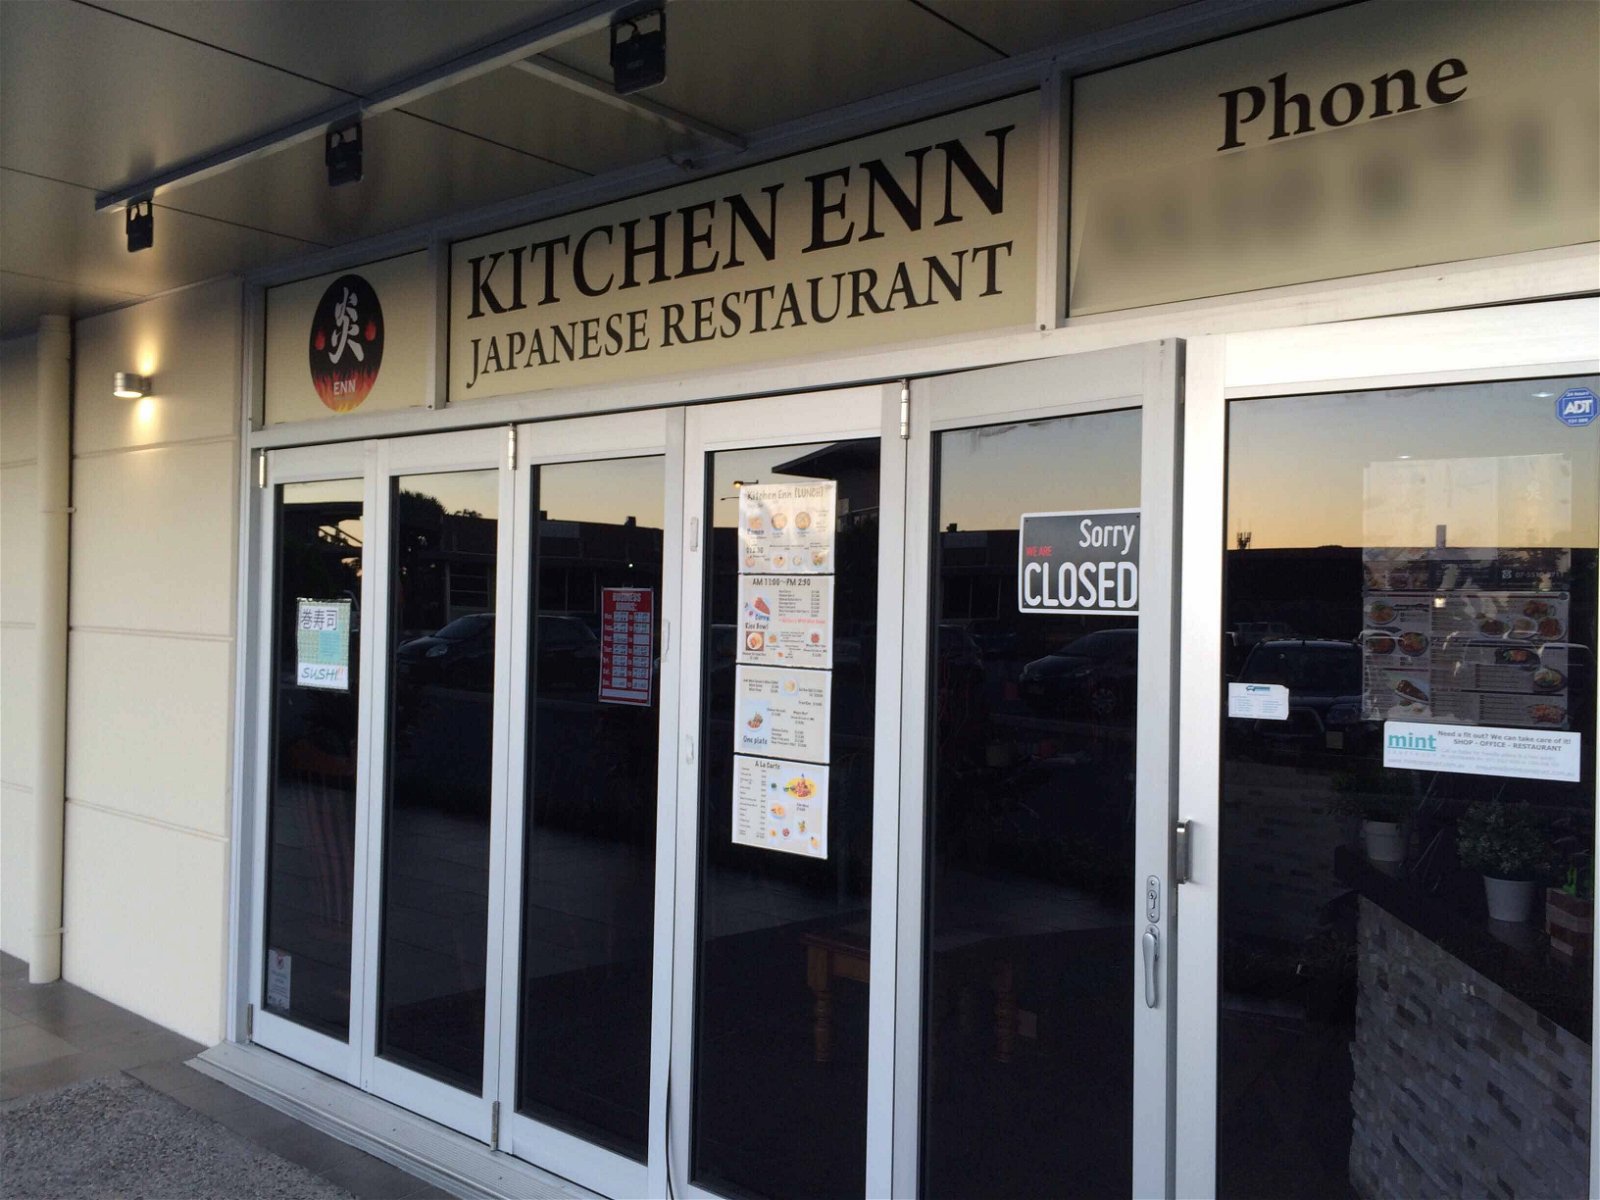 Kitchen Enn Japanese Restaurant - Food Delivery Shop